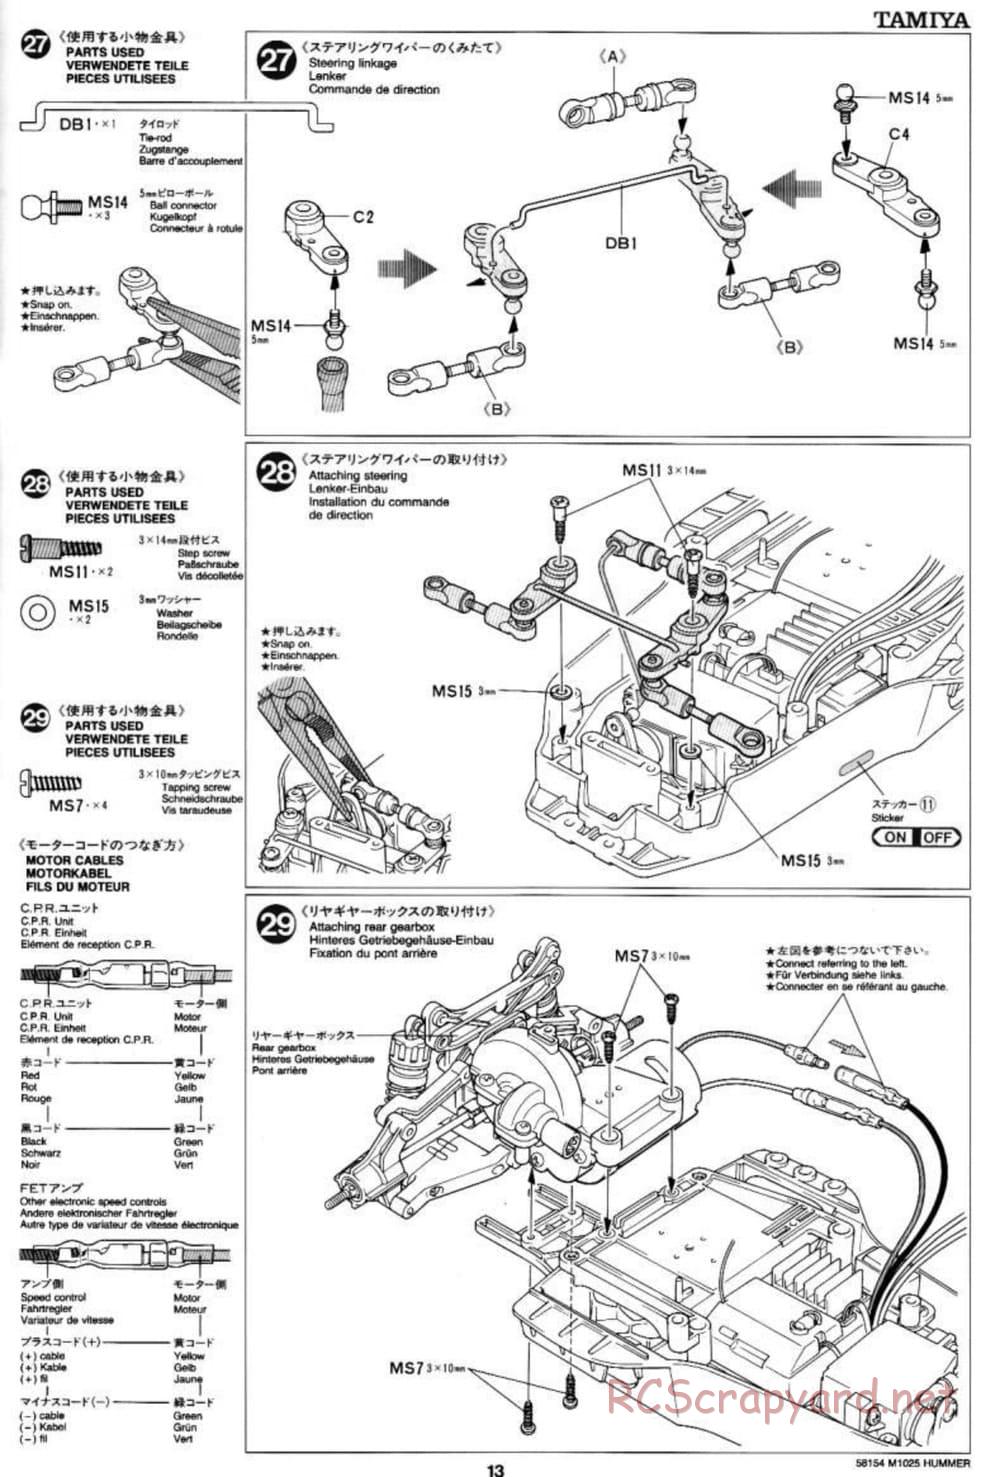 Tamiya - M1025 Hummer - TA-01 Chassis - Manual - Page 13